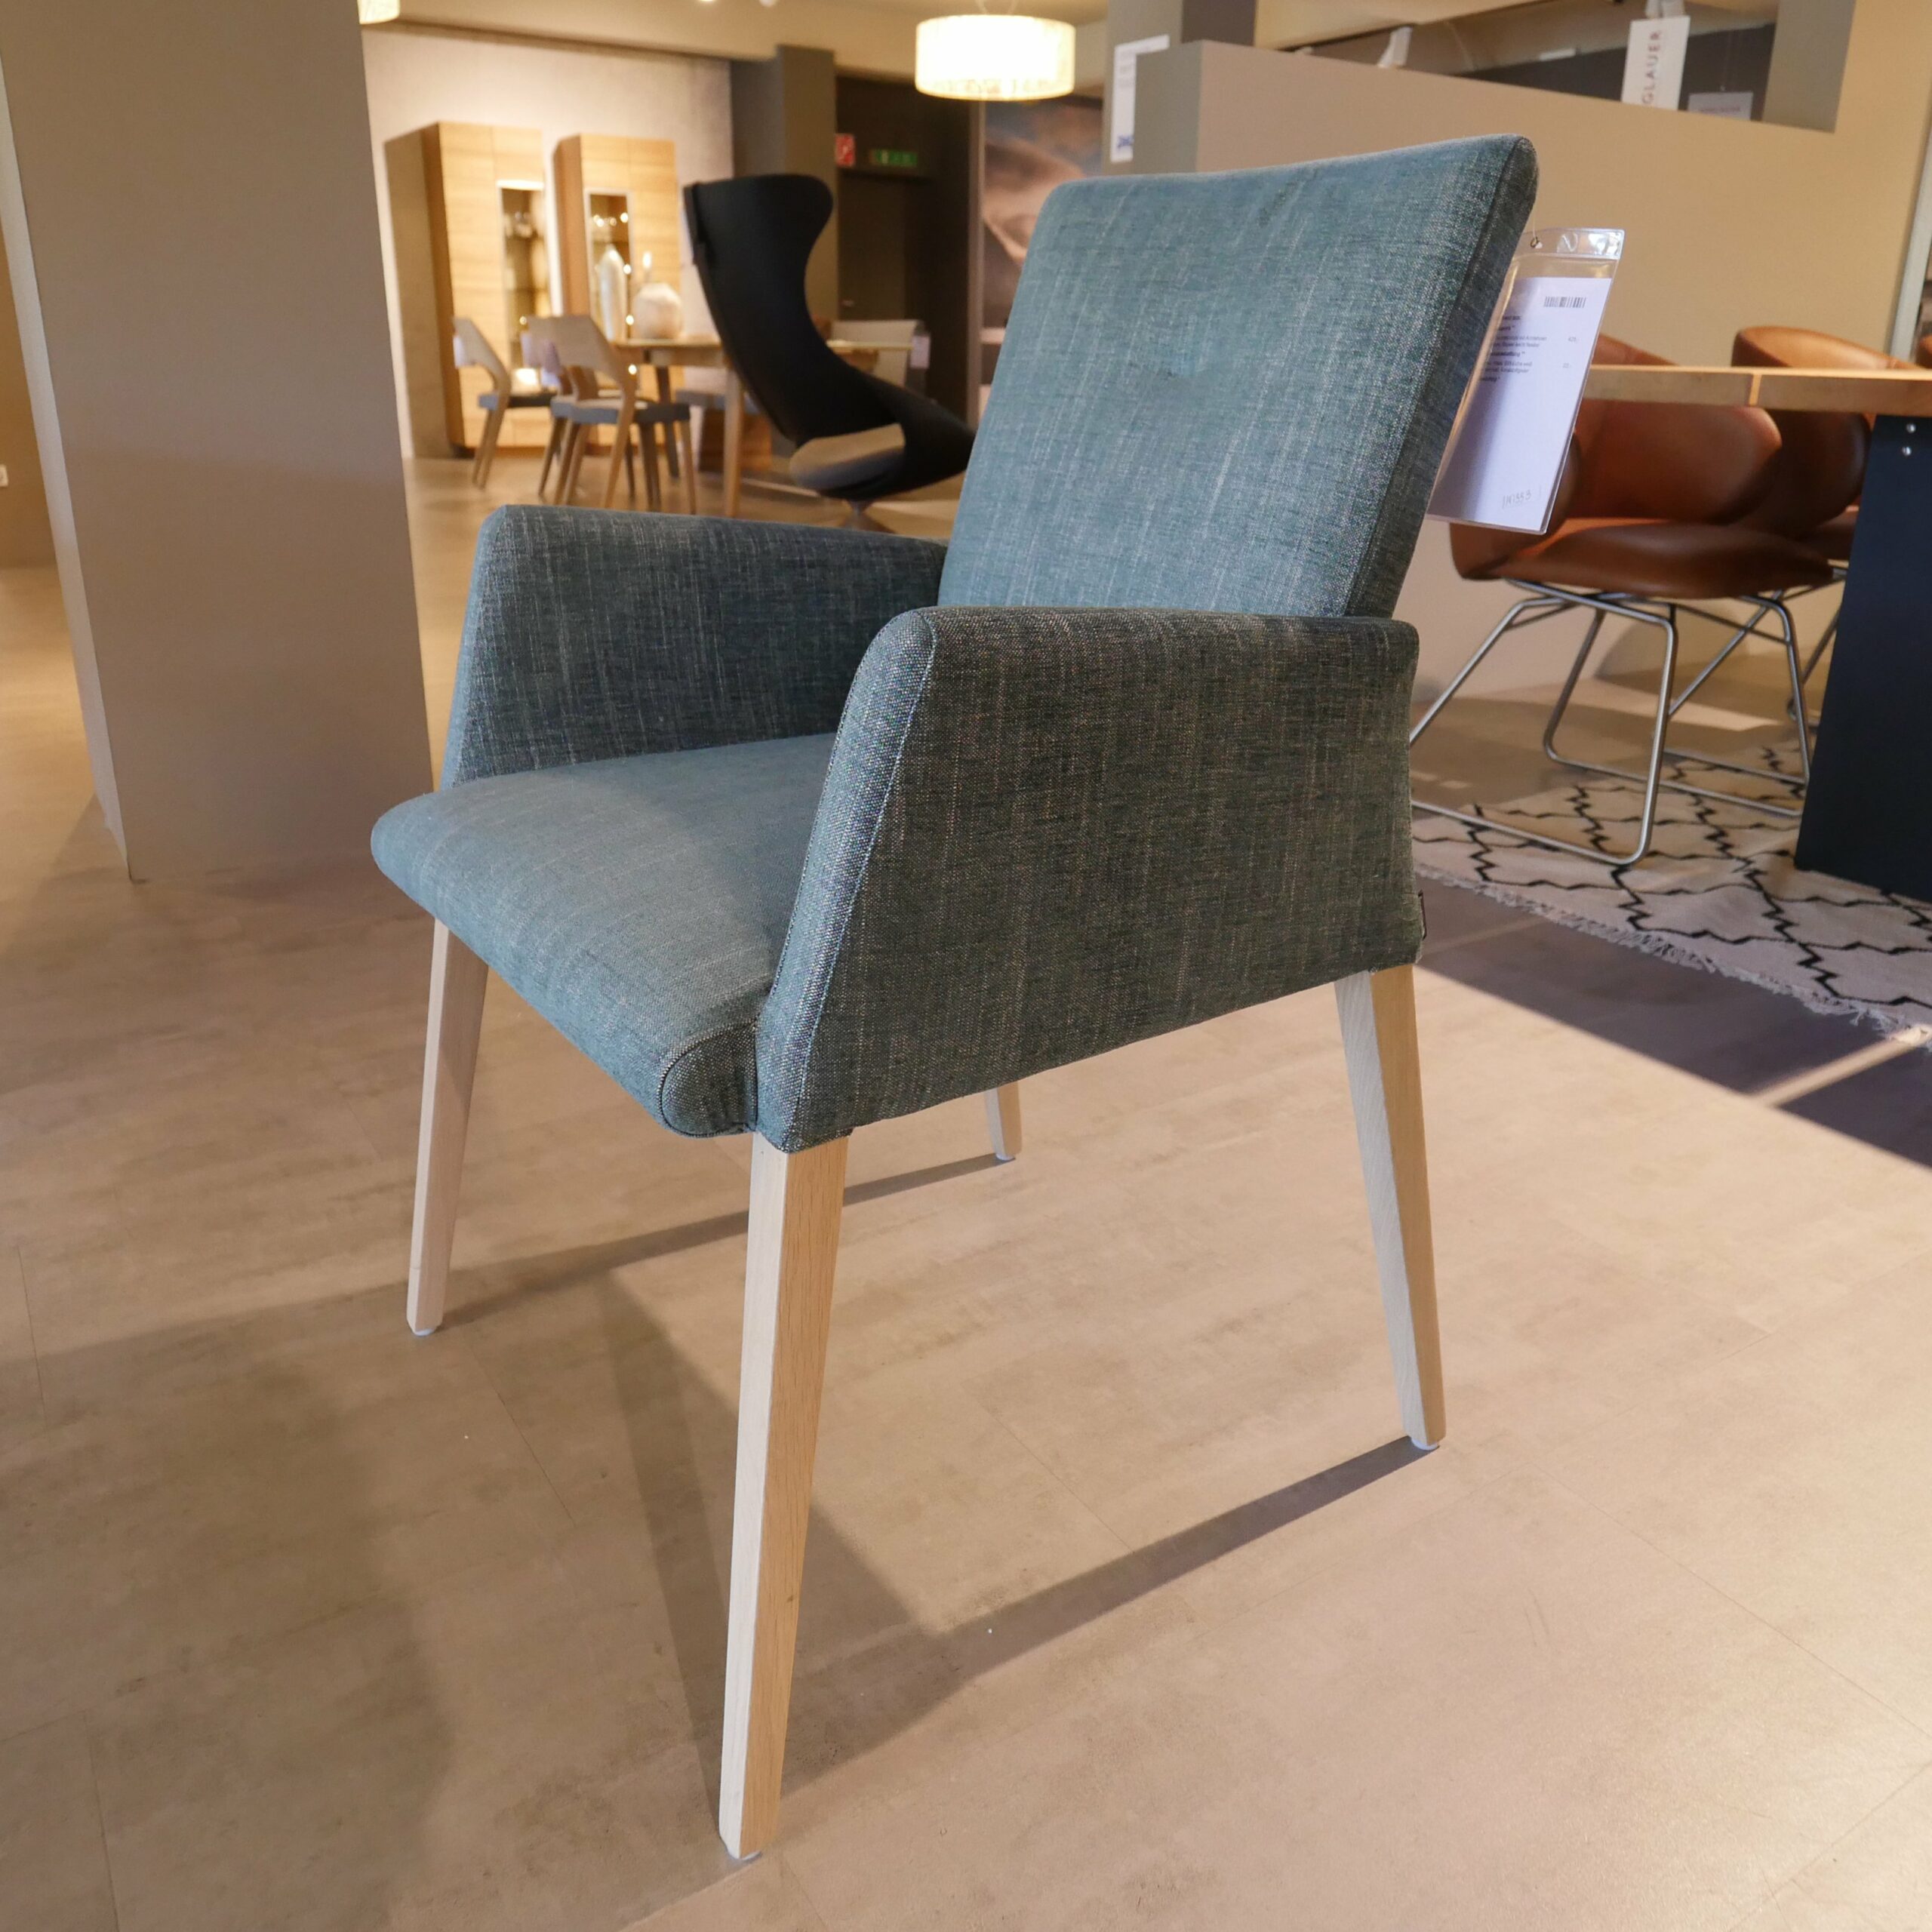 Musterring Piazza 8 Stühle - Stuhl mit Armlehnen, Bezug aus Textilgewebe grau-weiß